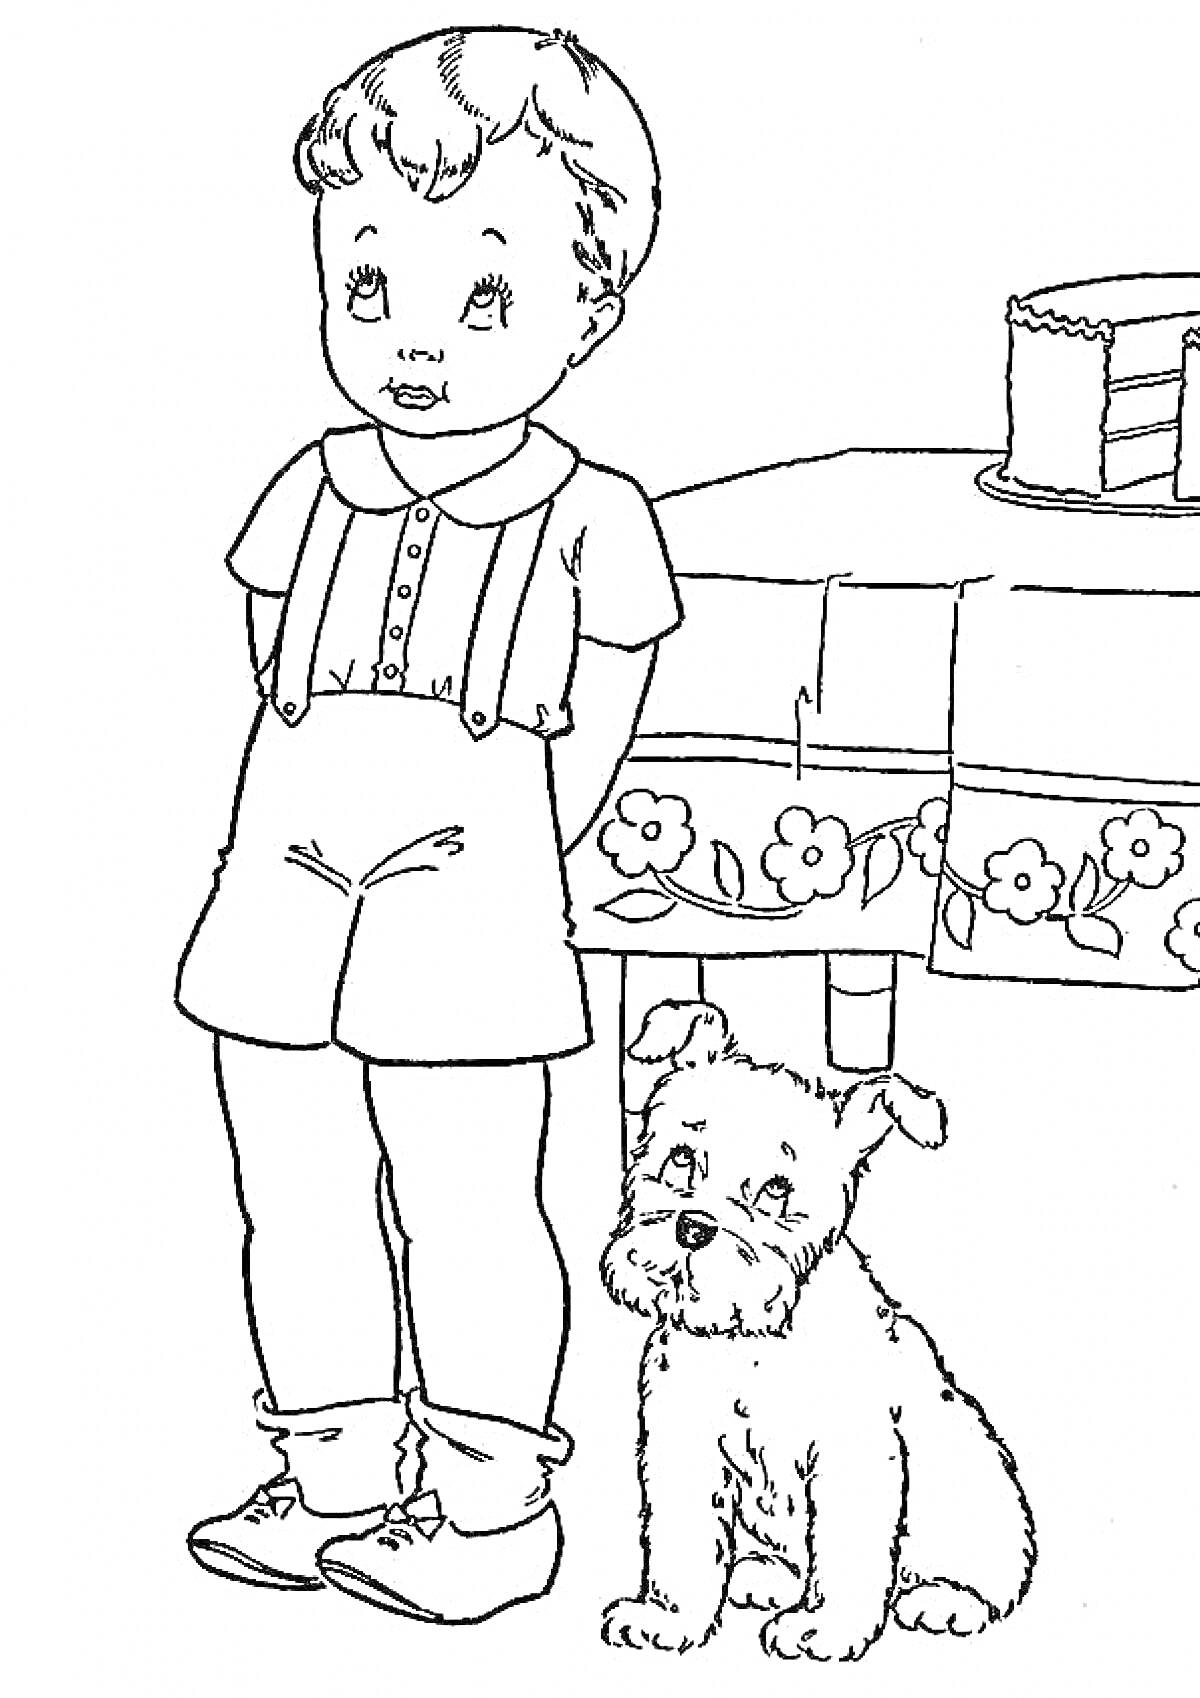 Мальчик с собакой рядом со столом с тортом